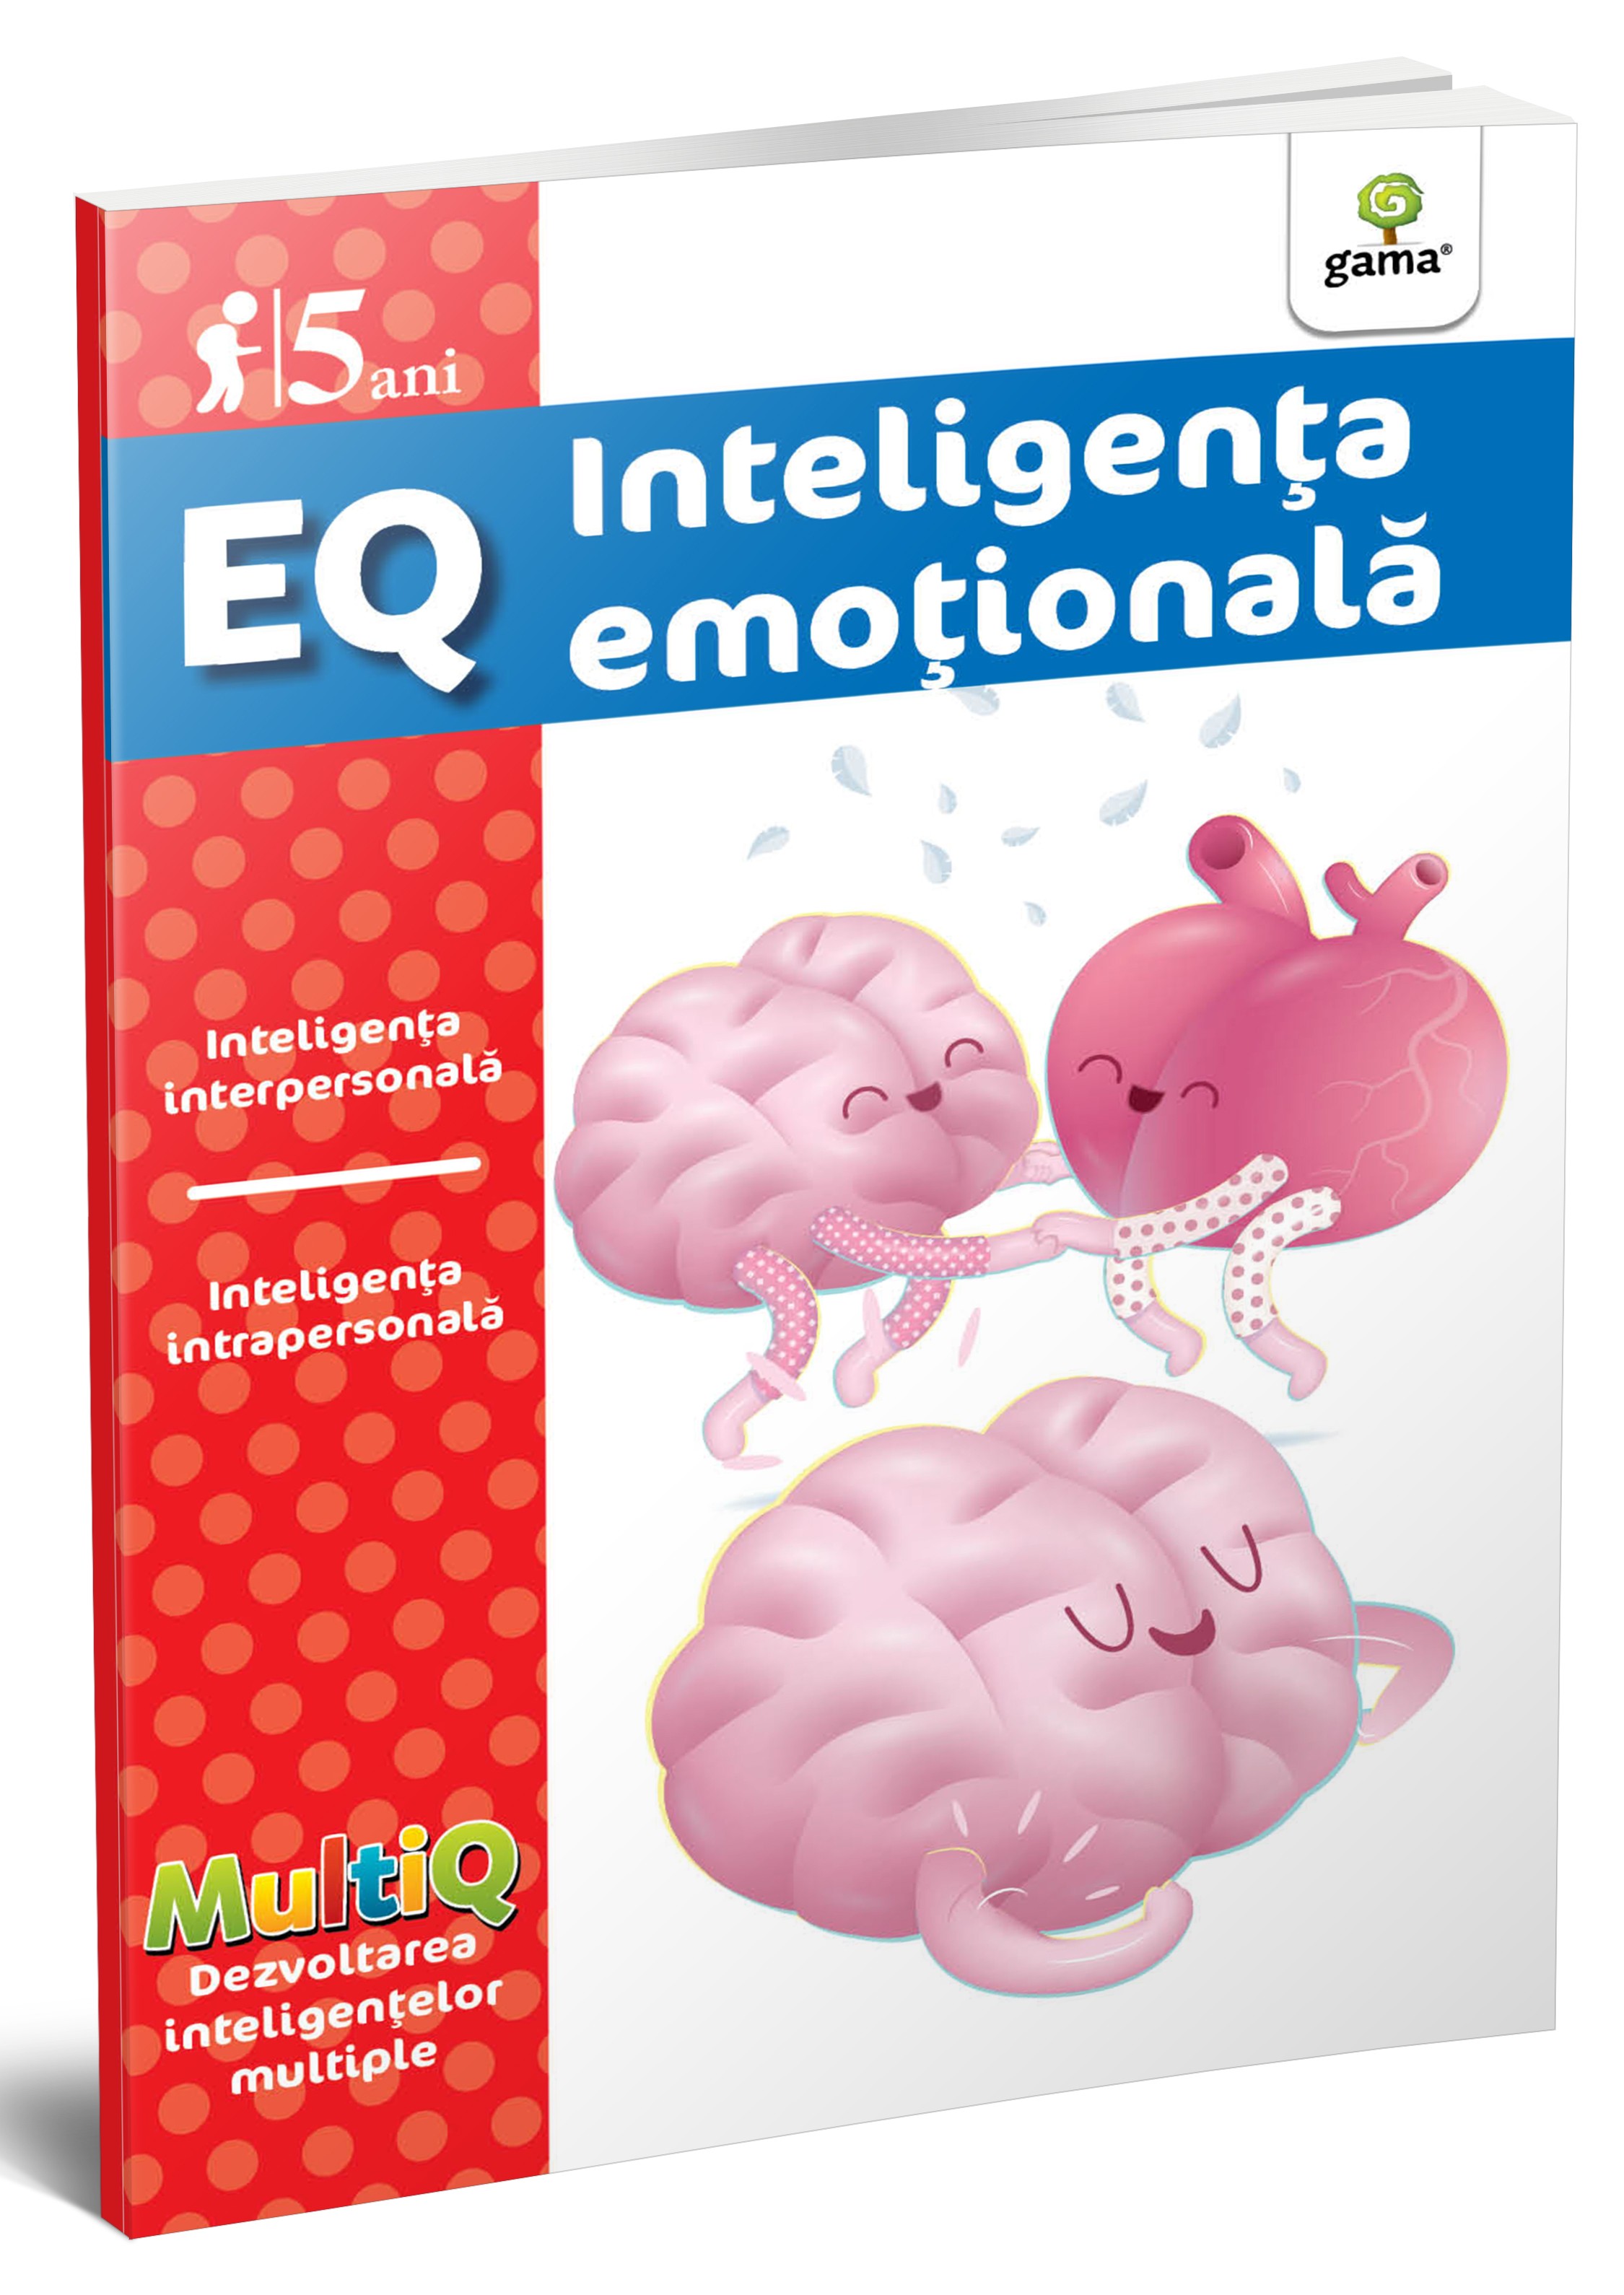 EQ.5 ani - Inteligenta emotionala